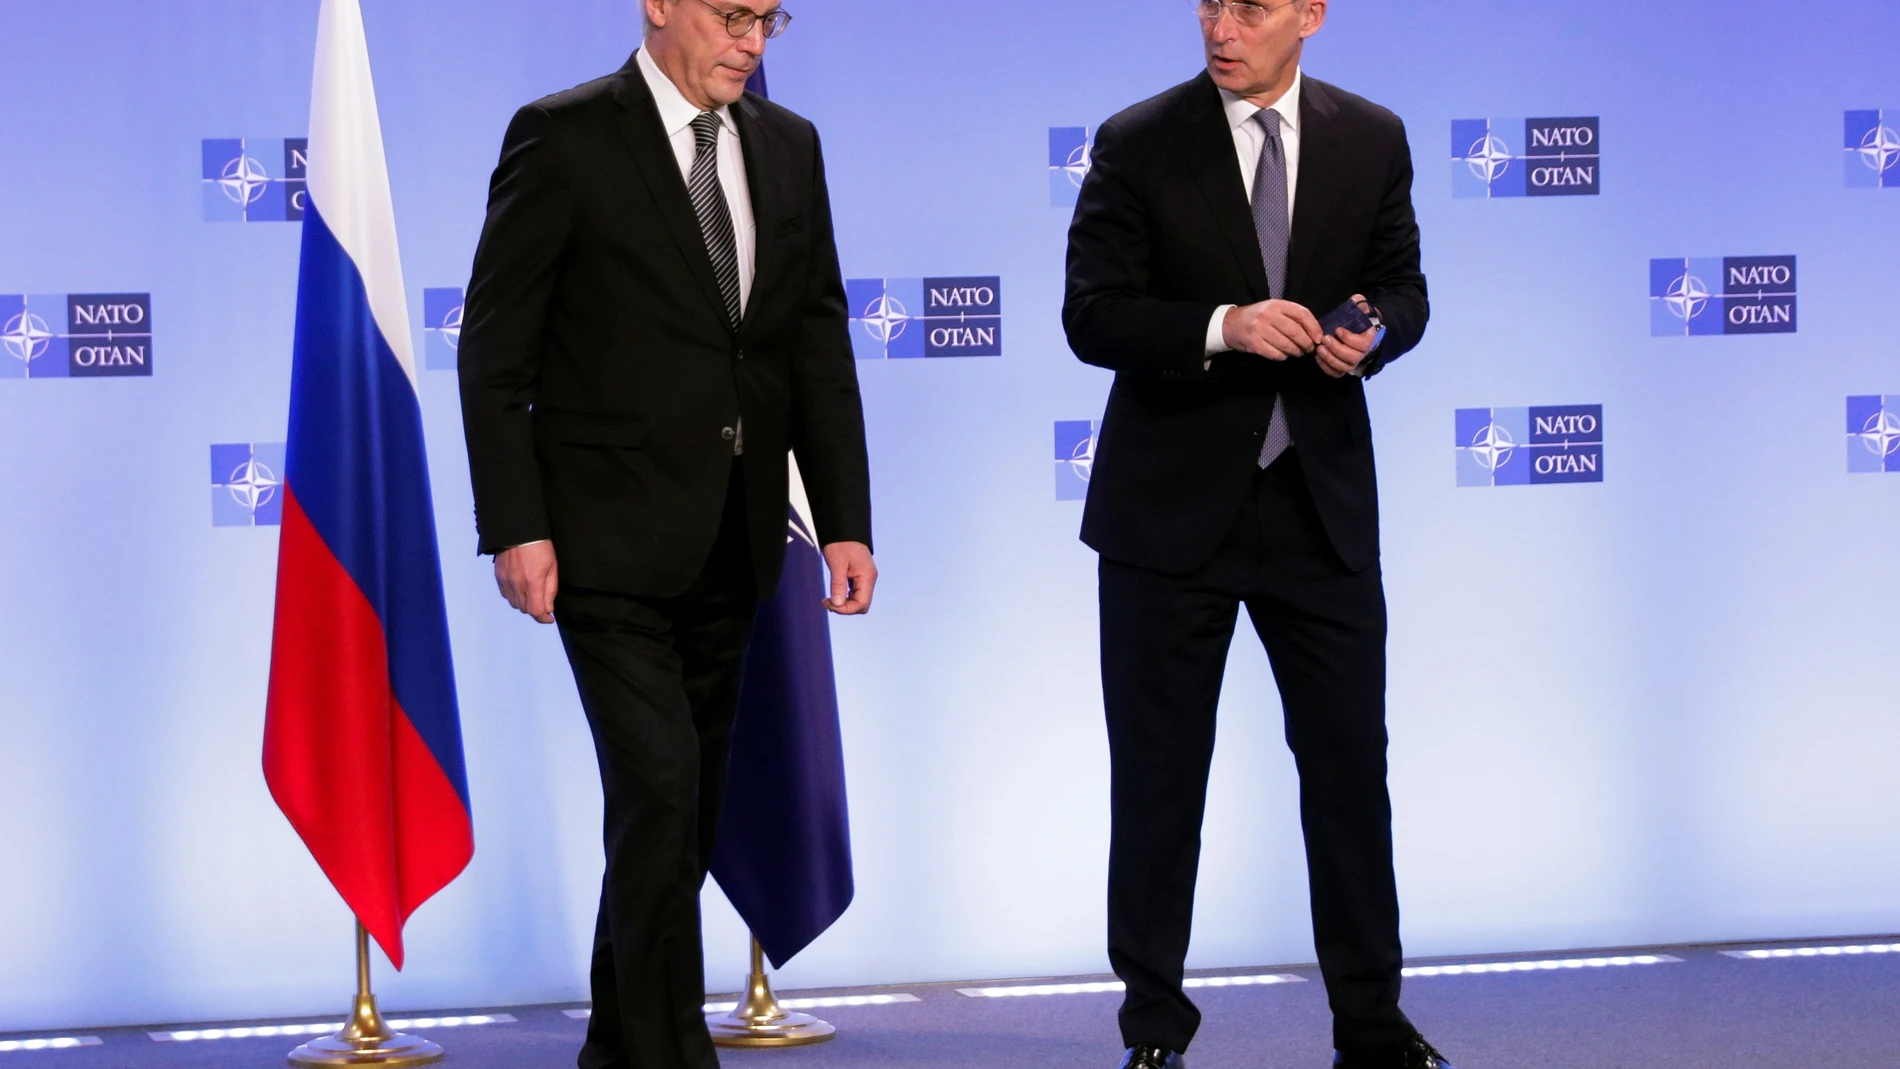 El viceministro de Asuntos Exteriores de Rusia, Alexander Grushko, y el Secretario General de la OTAN, Jens Stoltenberg, en el Consejo OTAN-Rusia celebrado en Bruselas